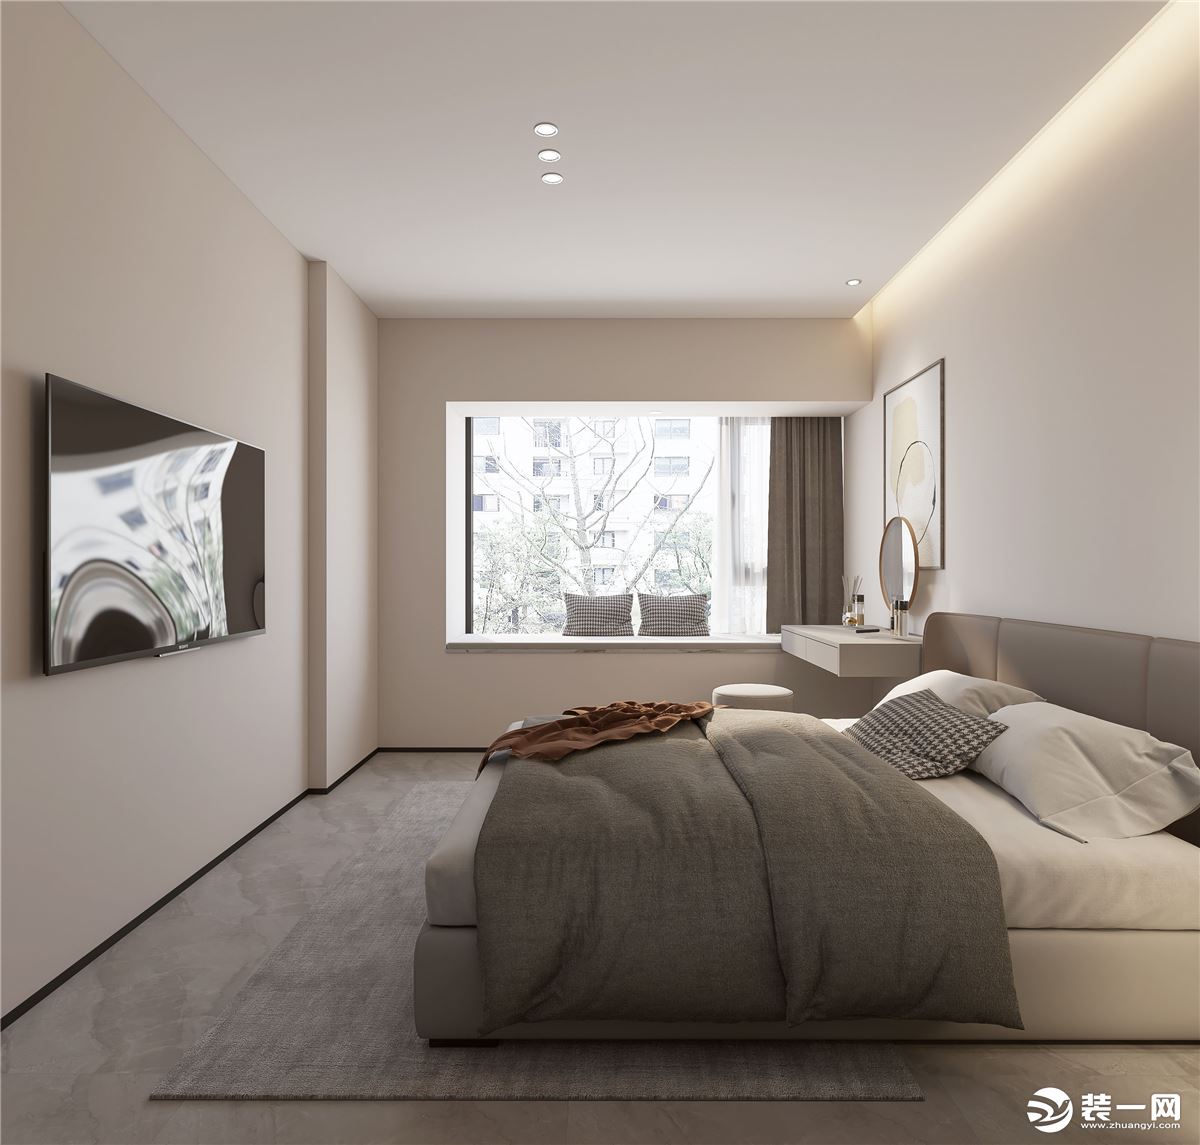 卧室空间以简约舒适的灰色调为主，灰白色的皮艺床铺，墙上独特的几何图案